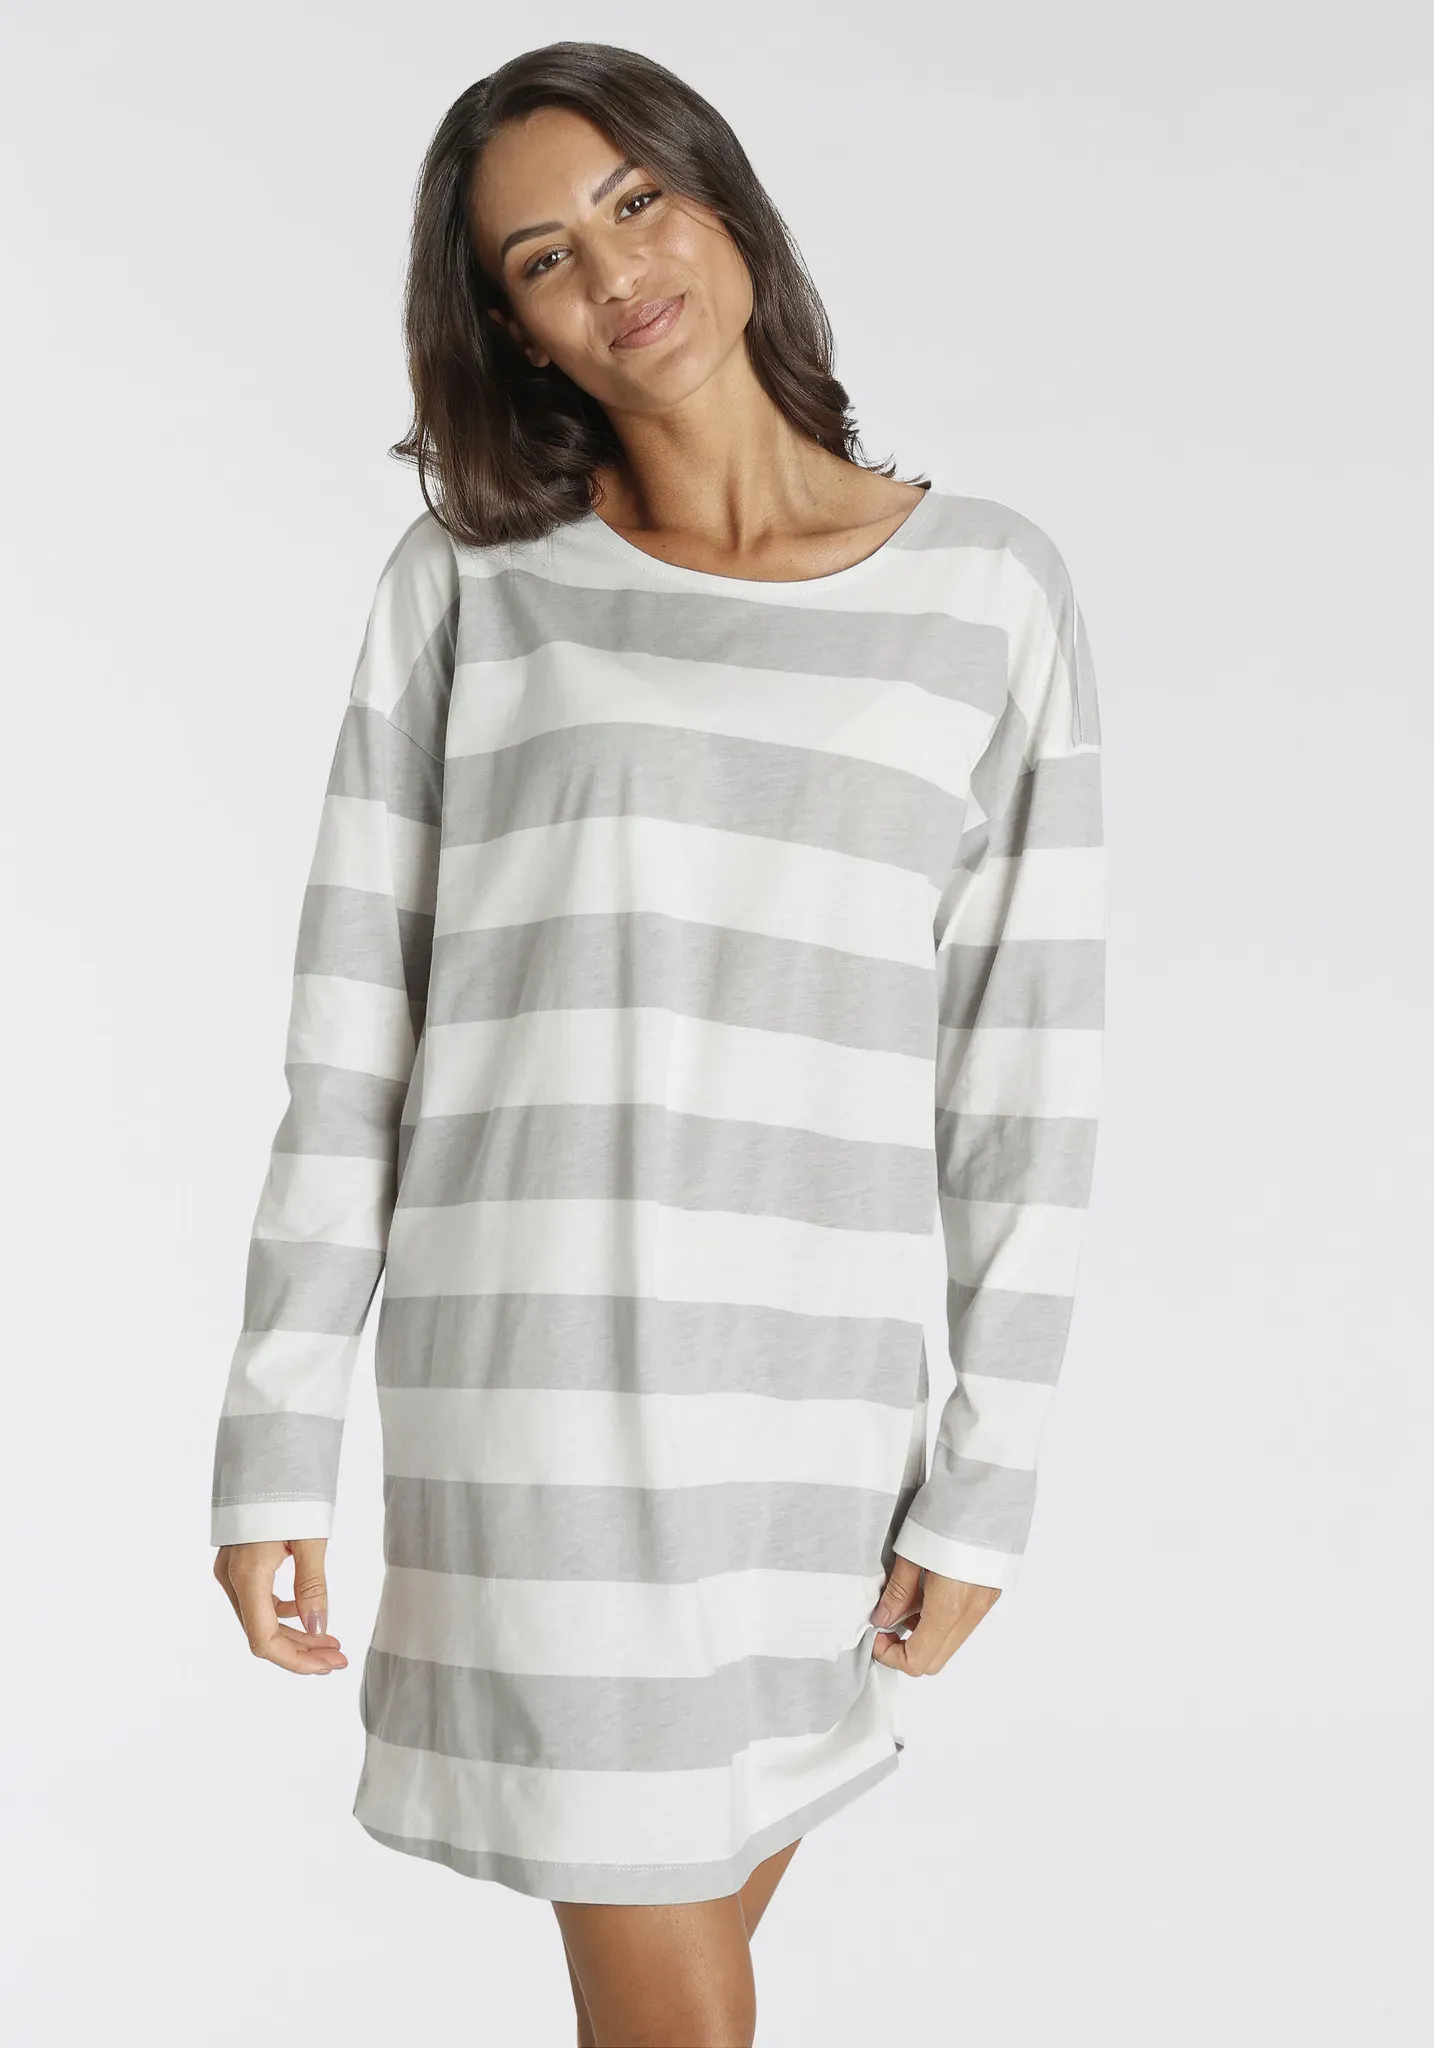 Nachthemd S.OLIVER Gr. 32/34, N-Gr, weiß (grau, weiß, gestreift) Damen Kleider Nachthemden in schönem Streifenmuster